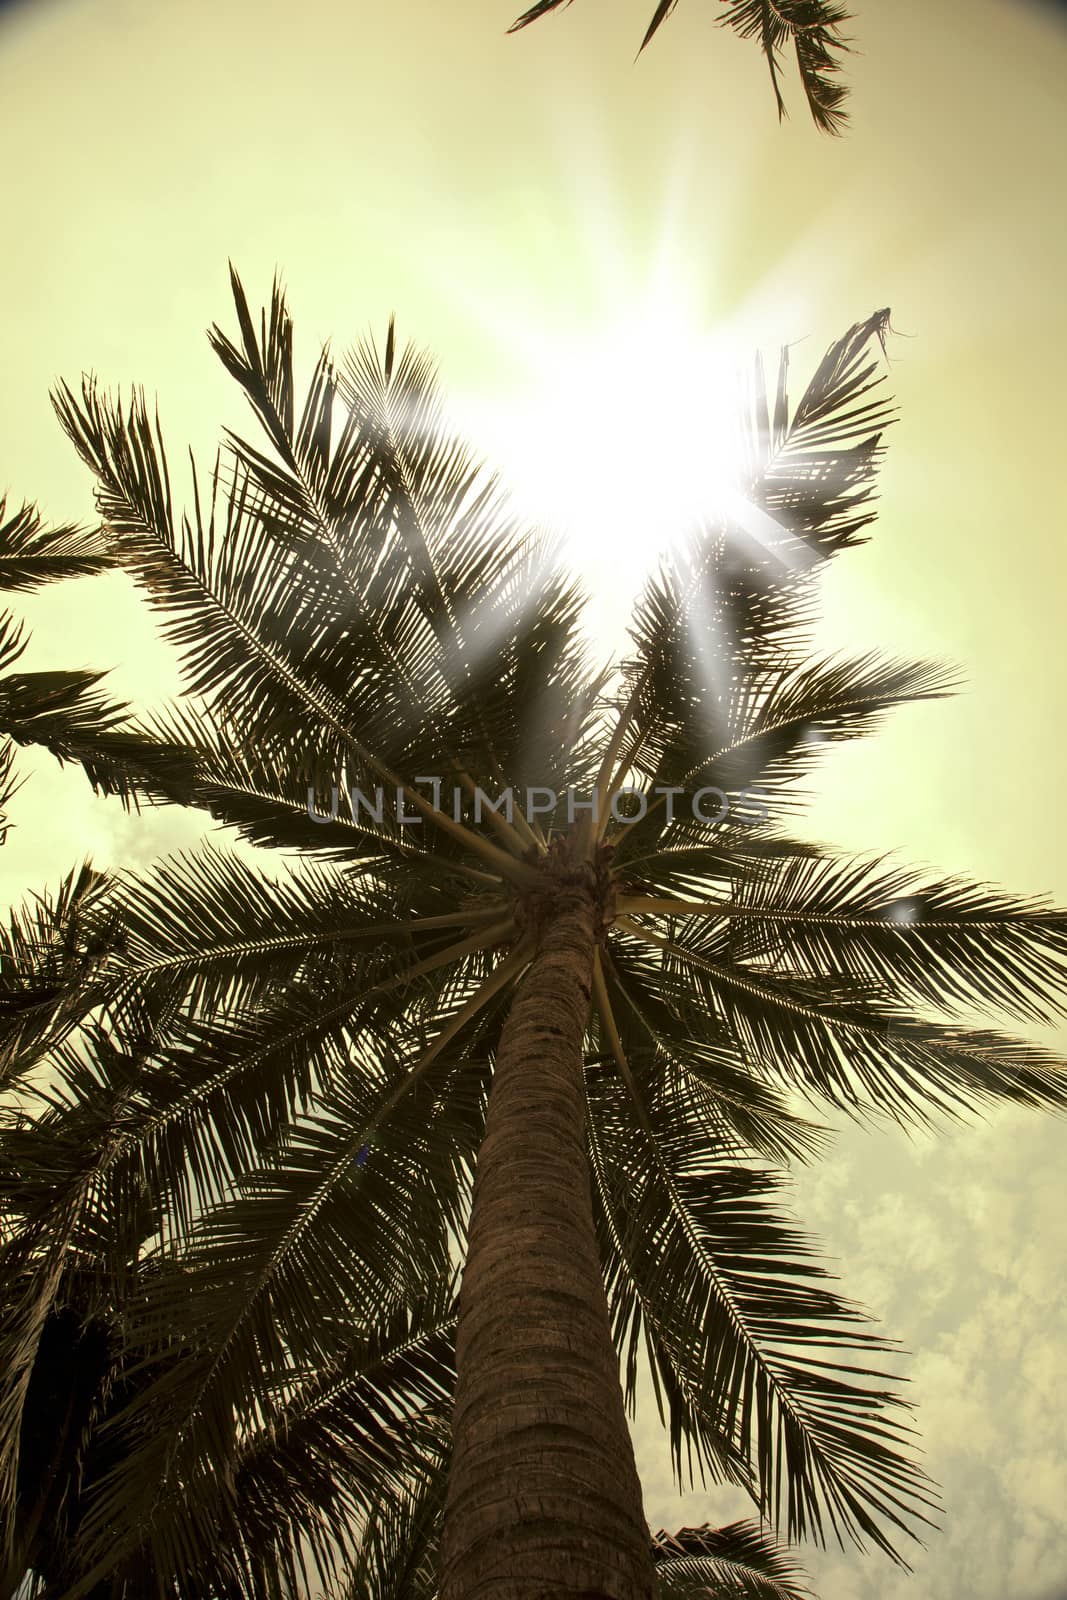 Sun rays through palm trees by haiderazim